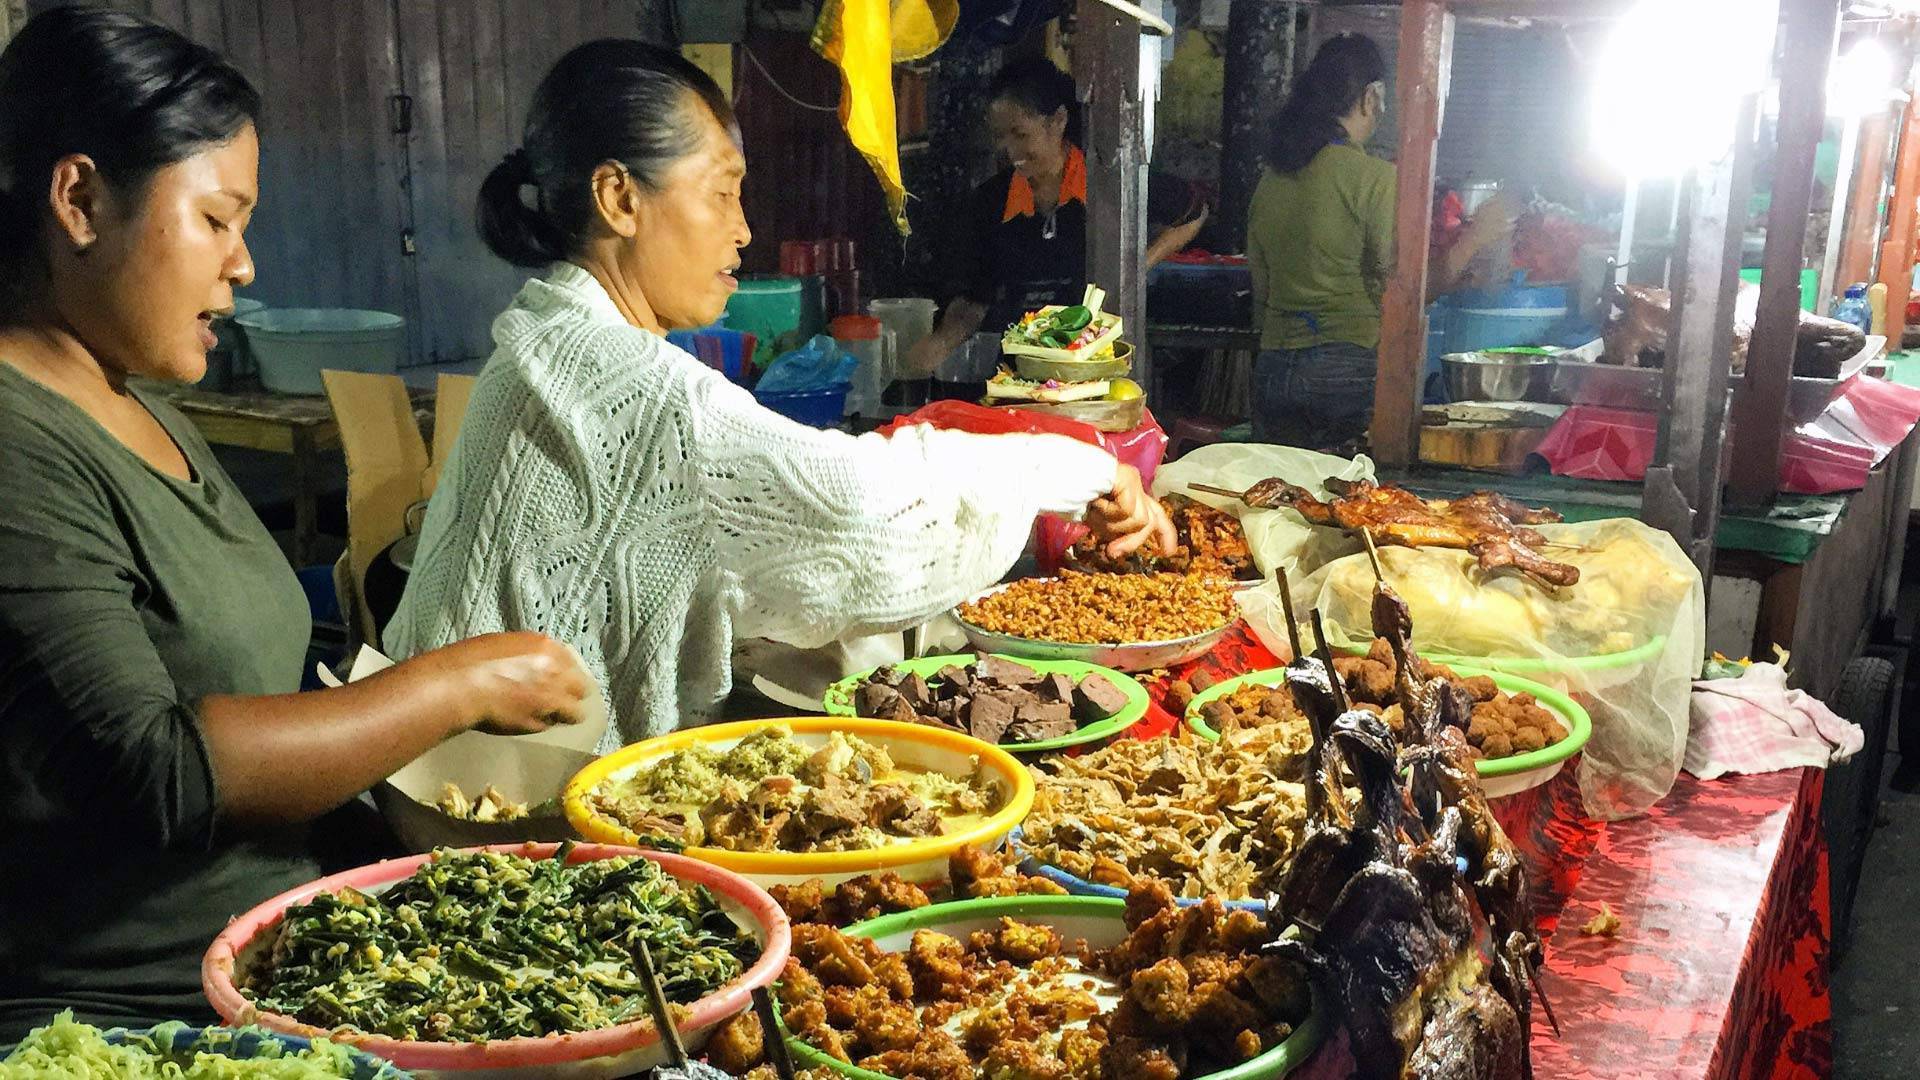 Еда на бали - 11 блюд, которые стоит попробовать, рынки, магазины